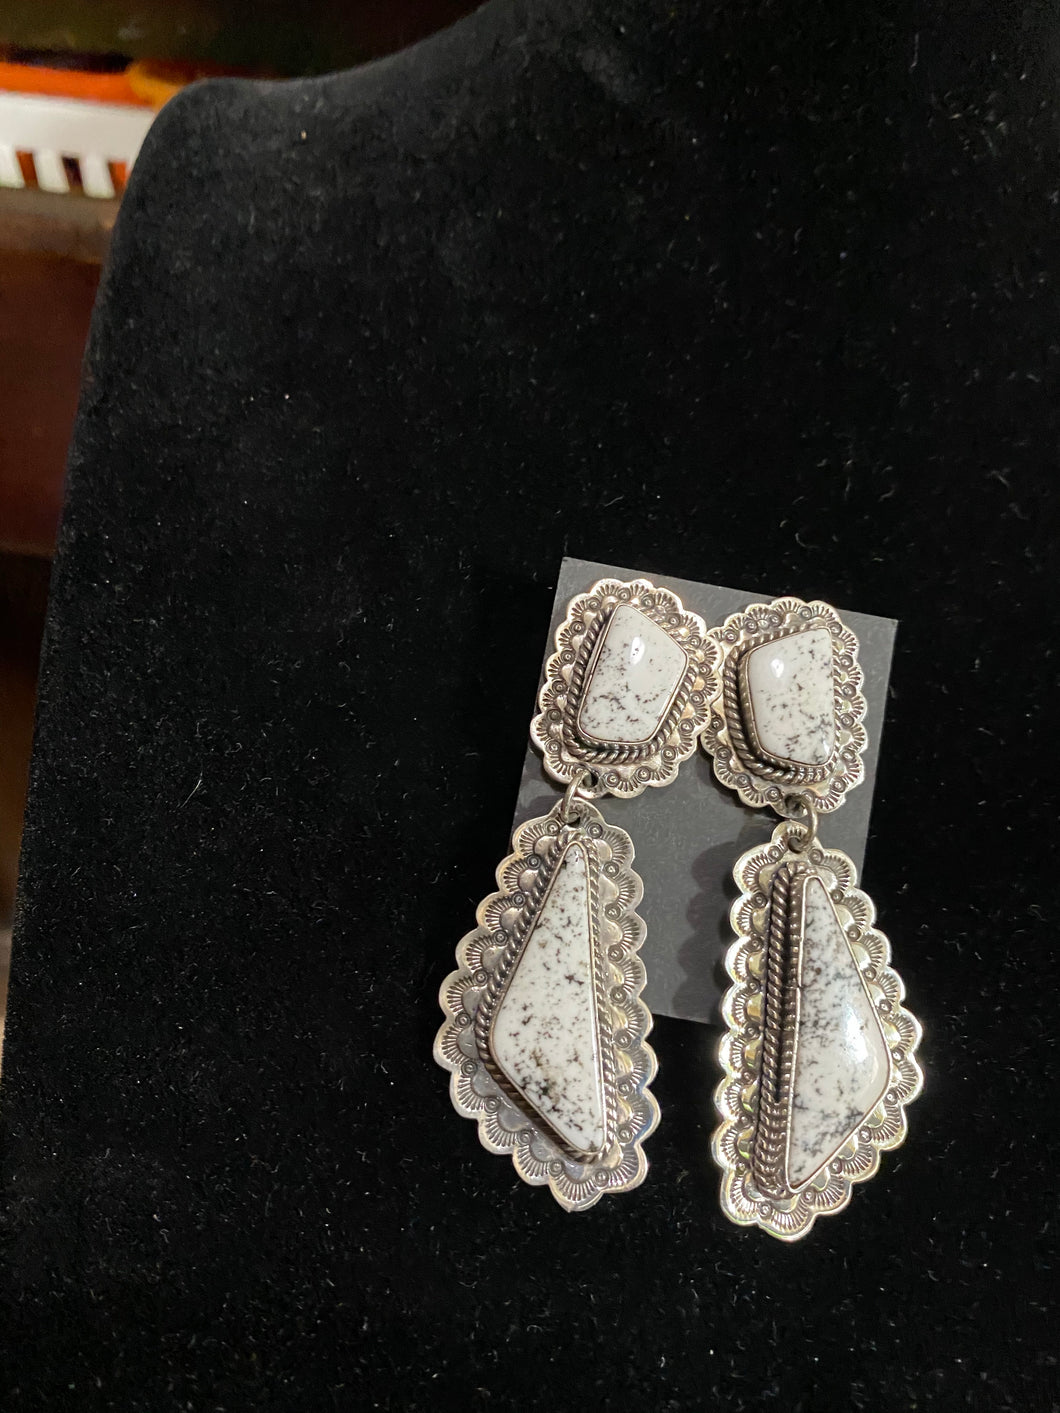 White Buffalo SR earrings